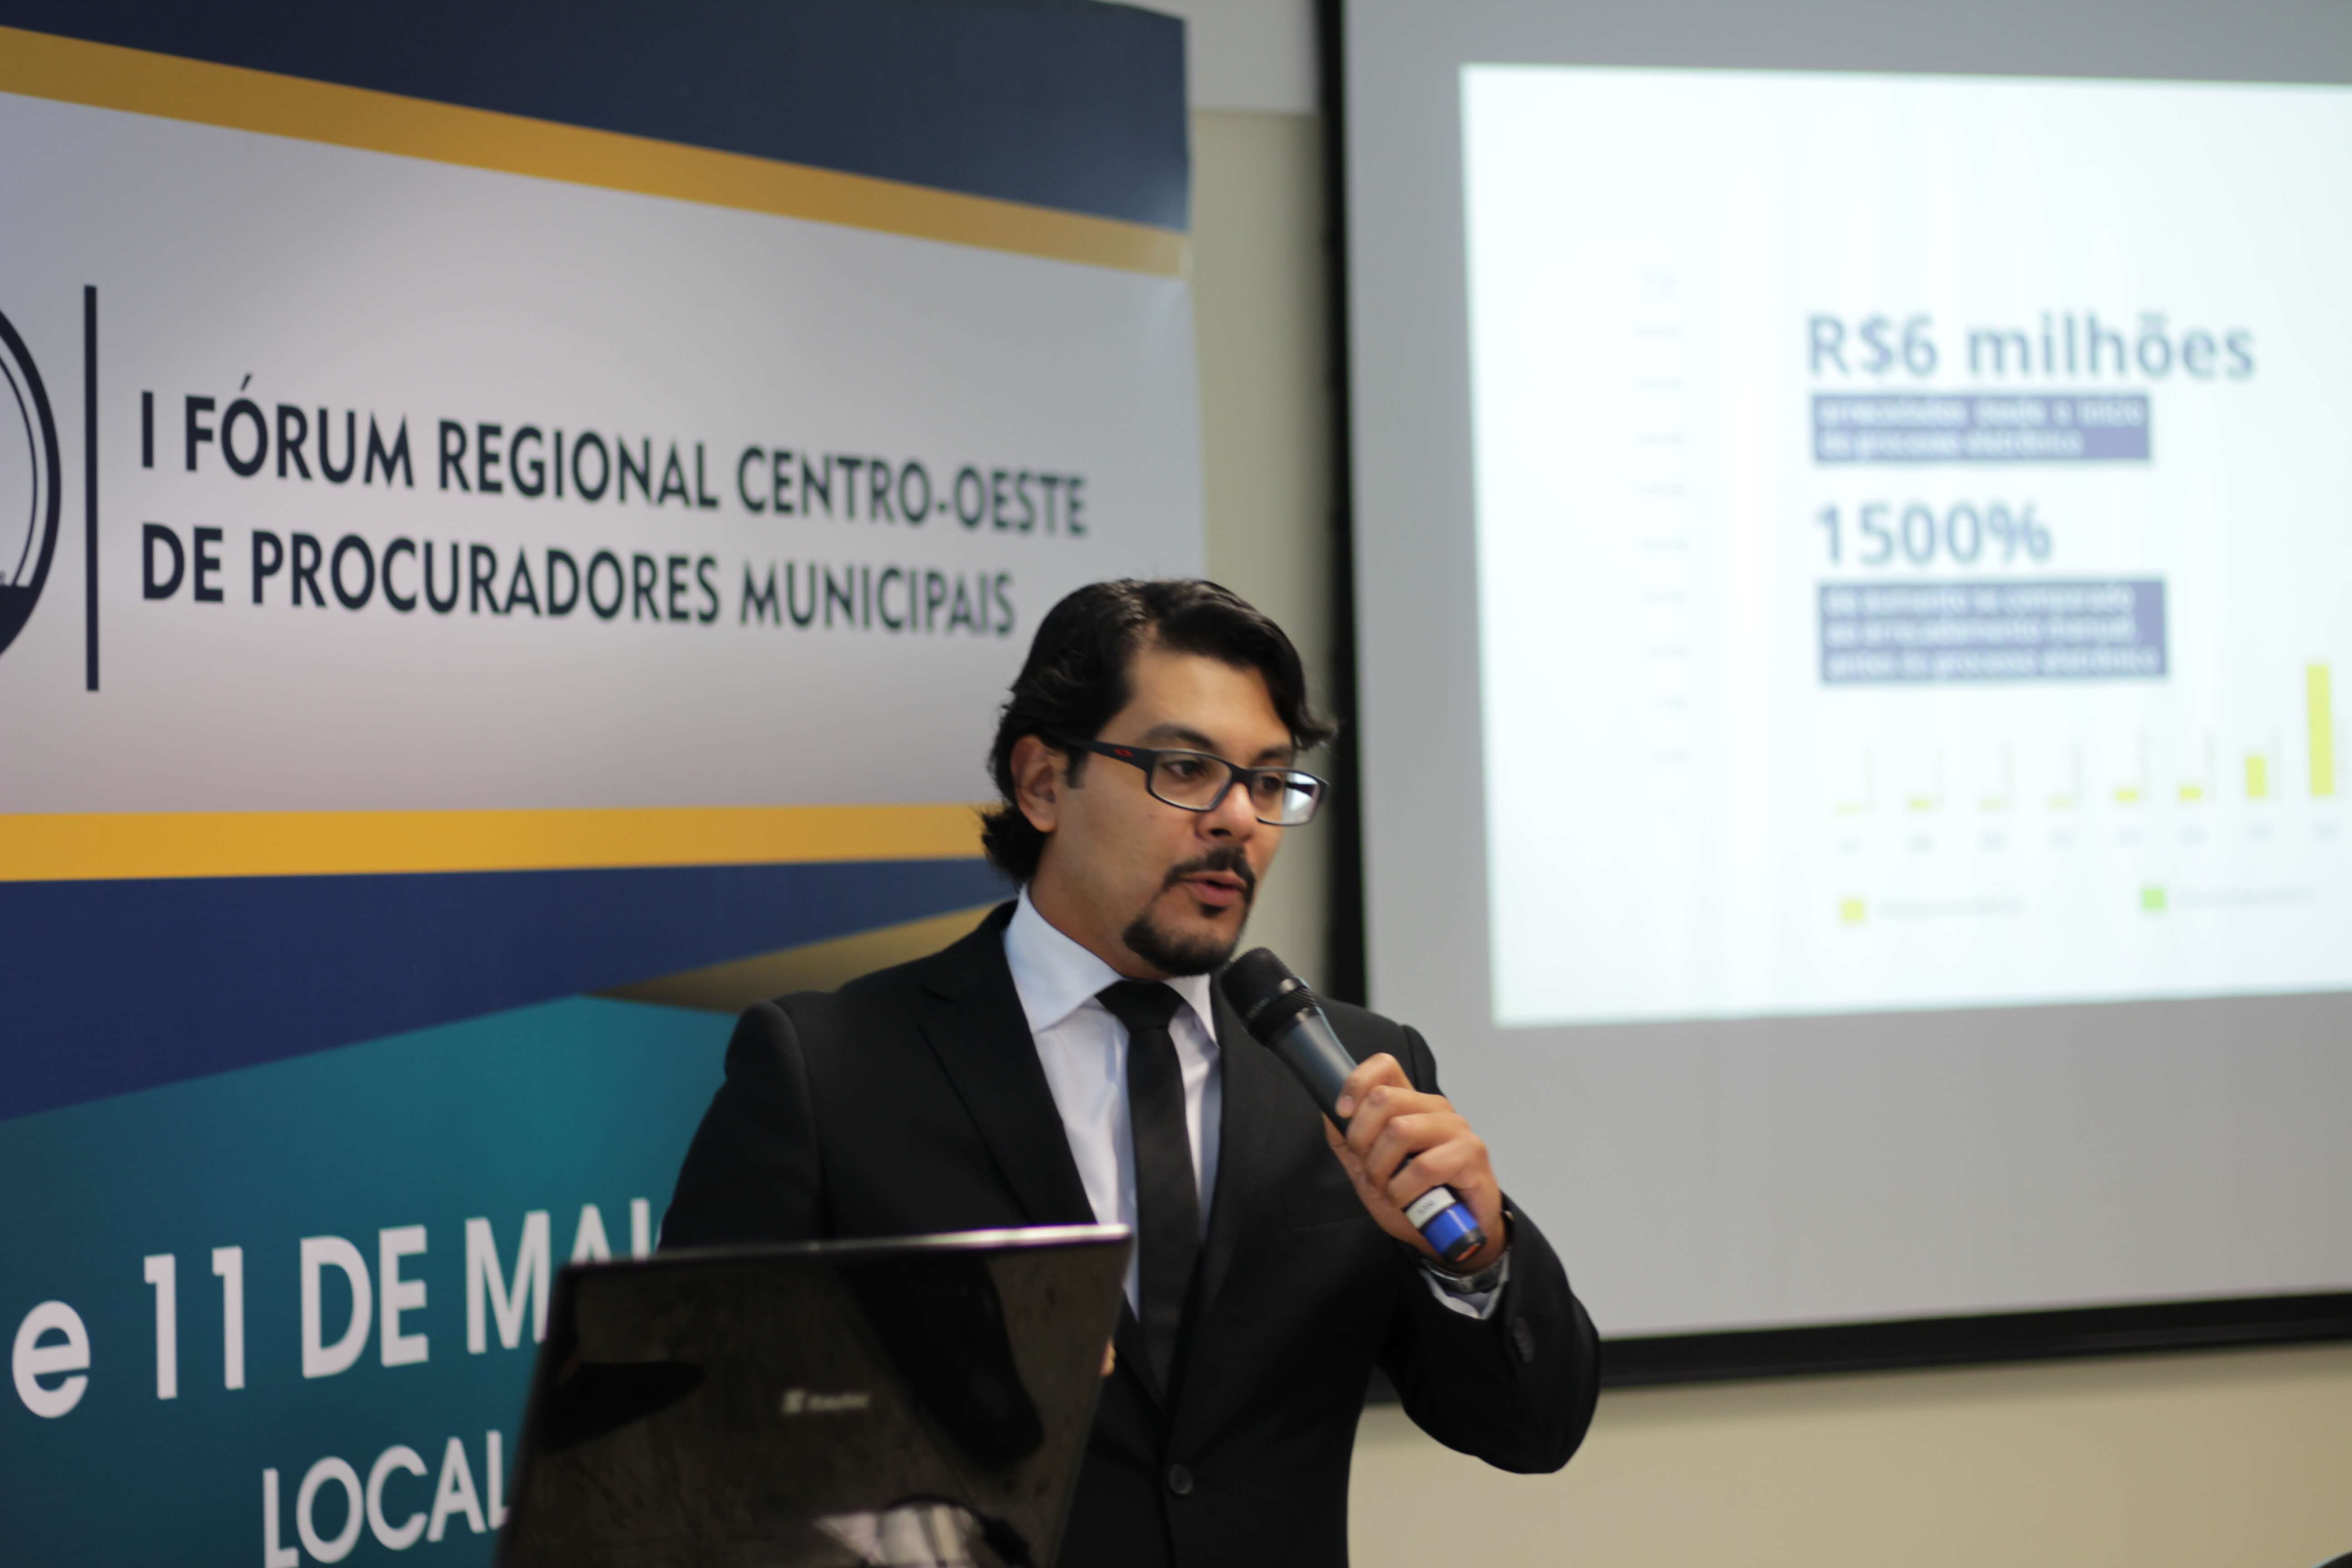 Desafios das Procuradorias - Thiago Ferreira